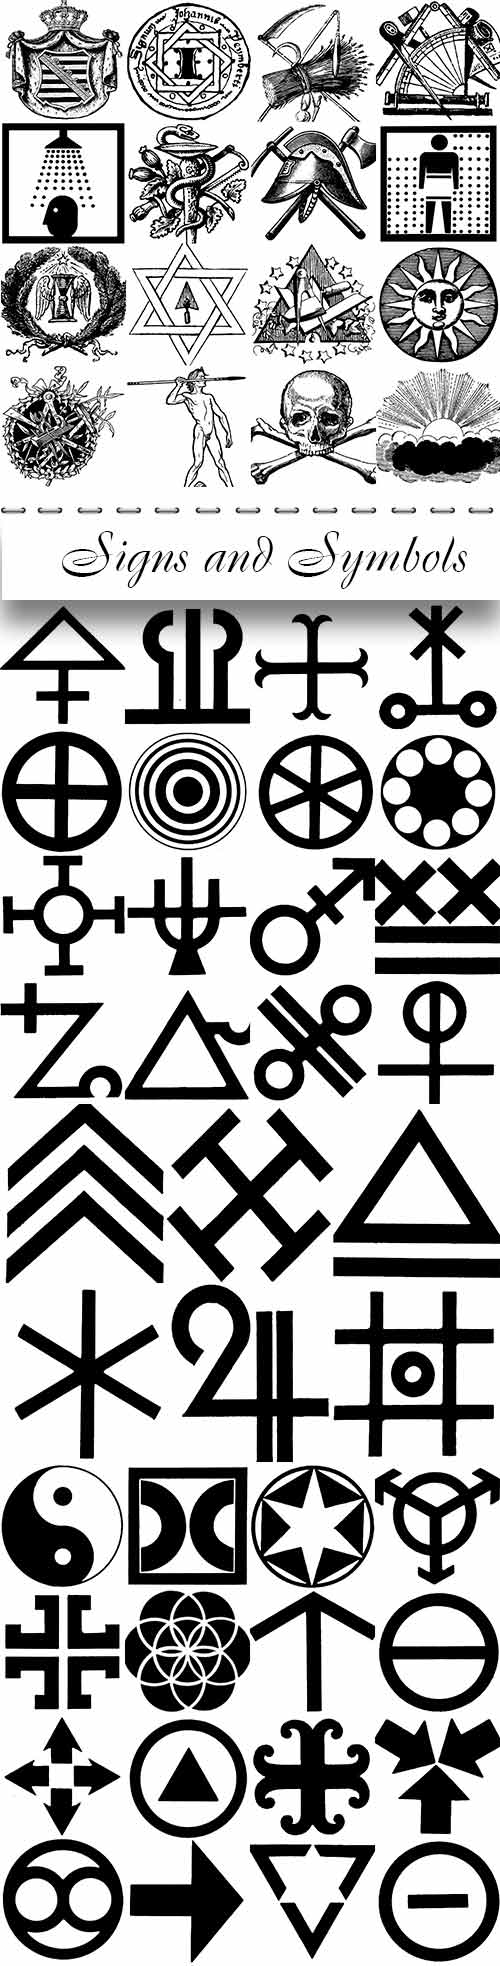 PEPIN PRESS  Signs and Symbols